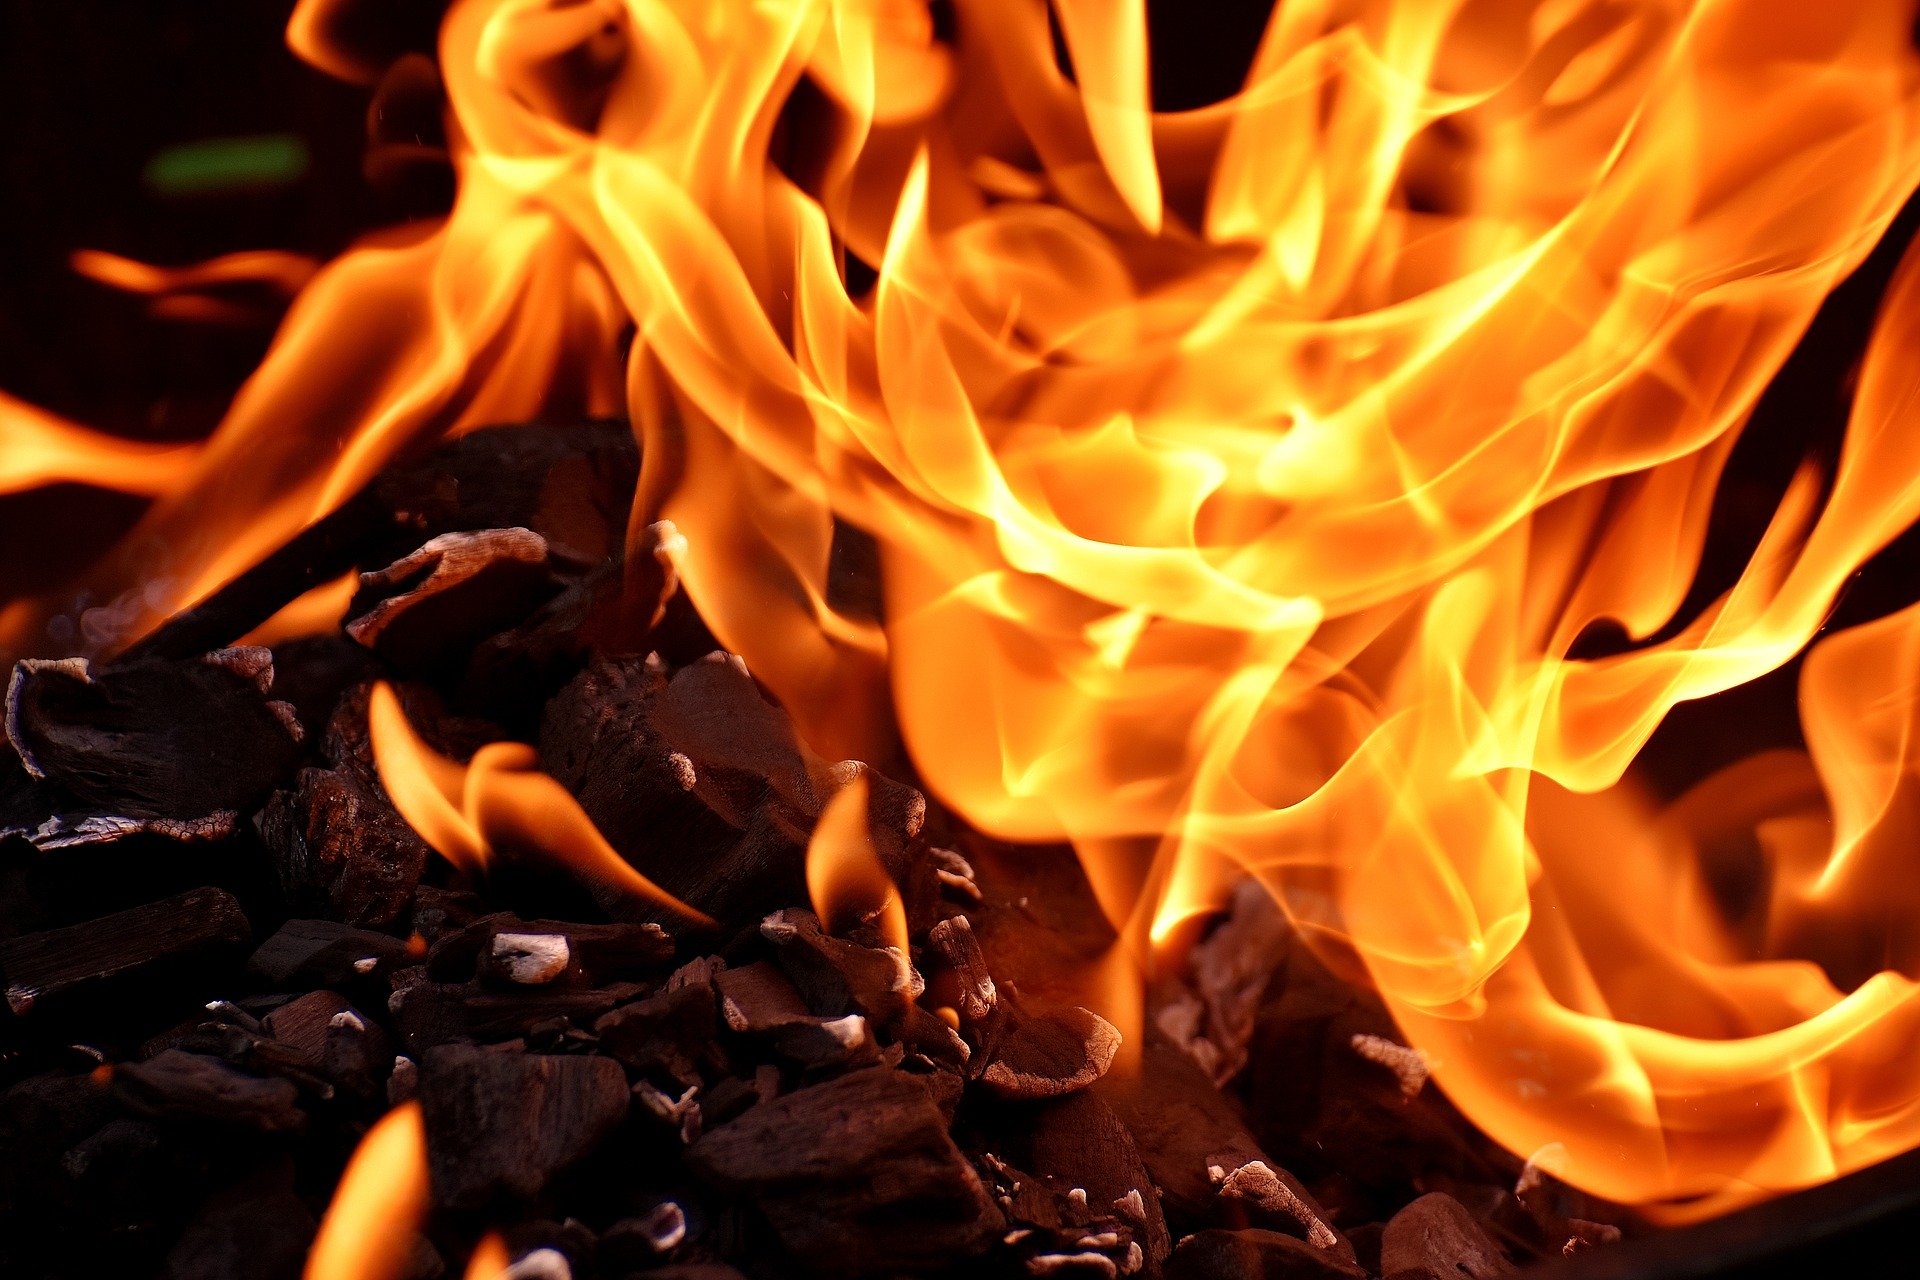 Fuego, ley prohibir desarrollos económicos tierras incendiadas